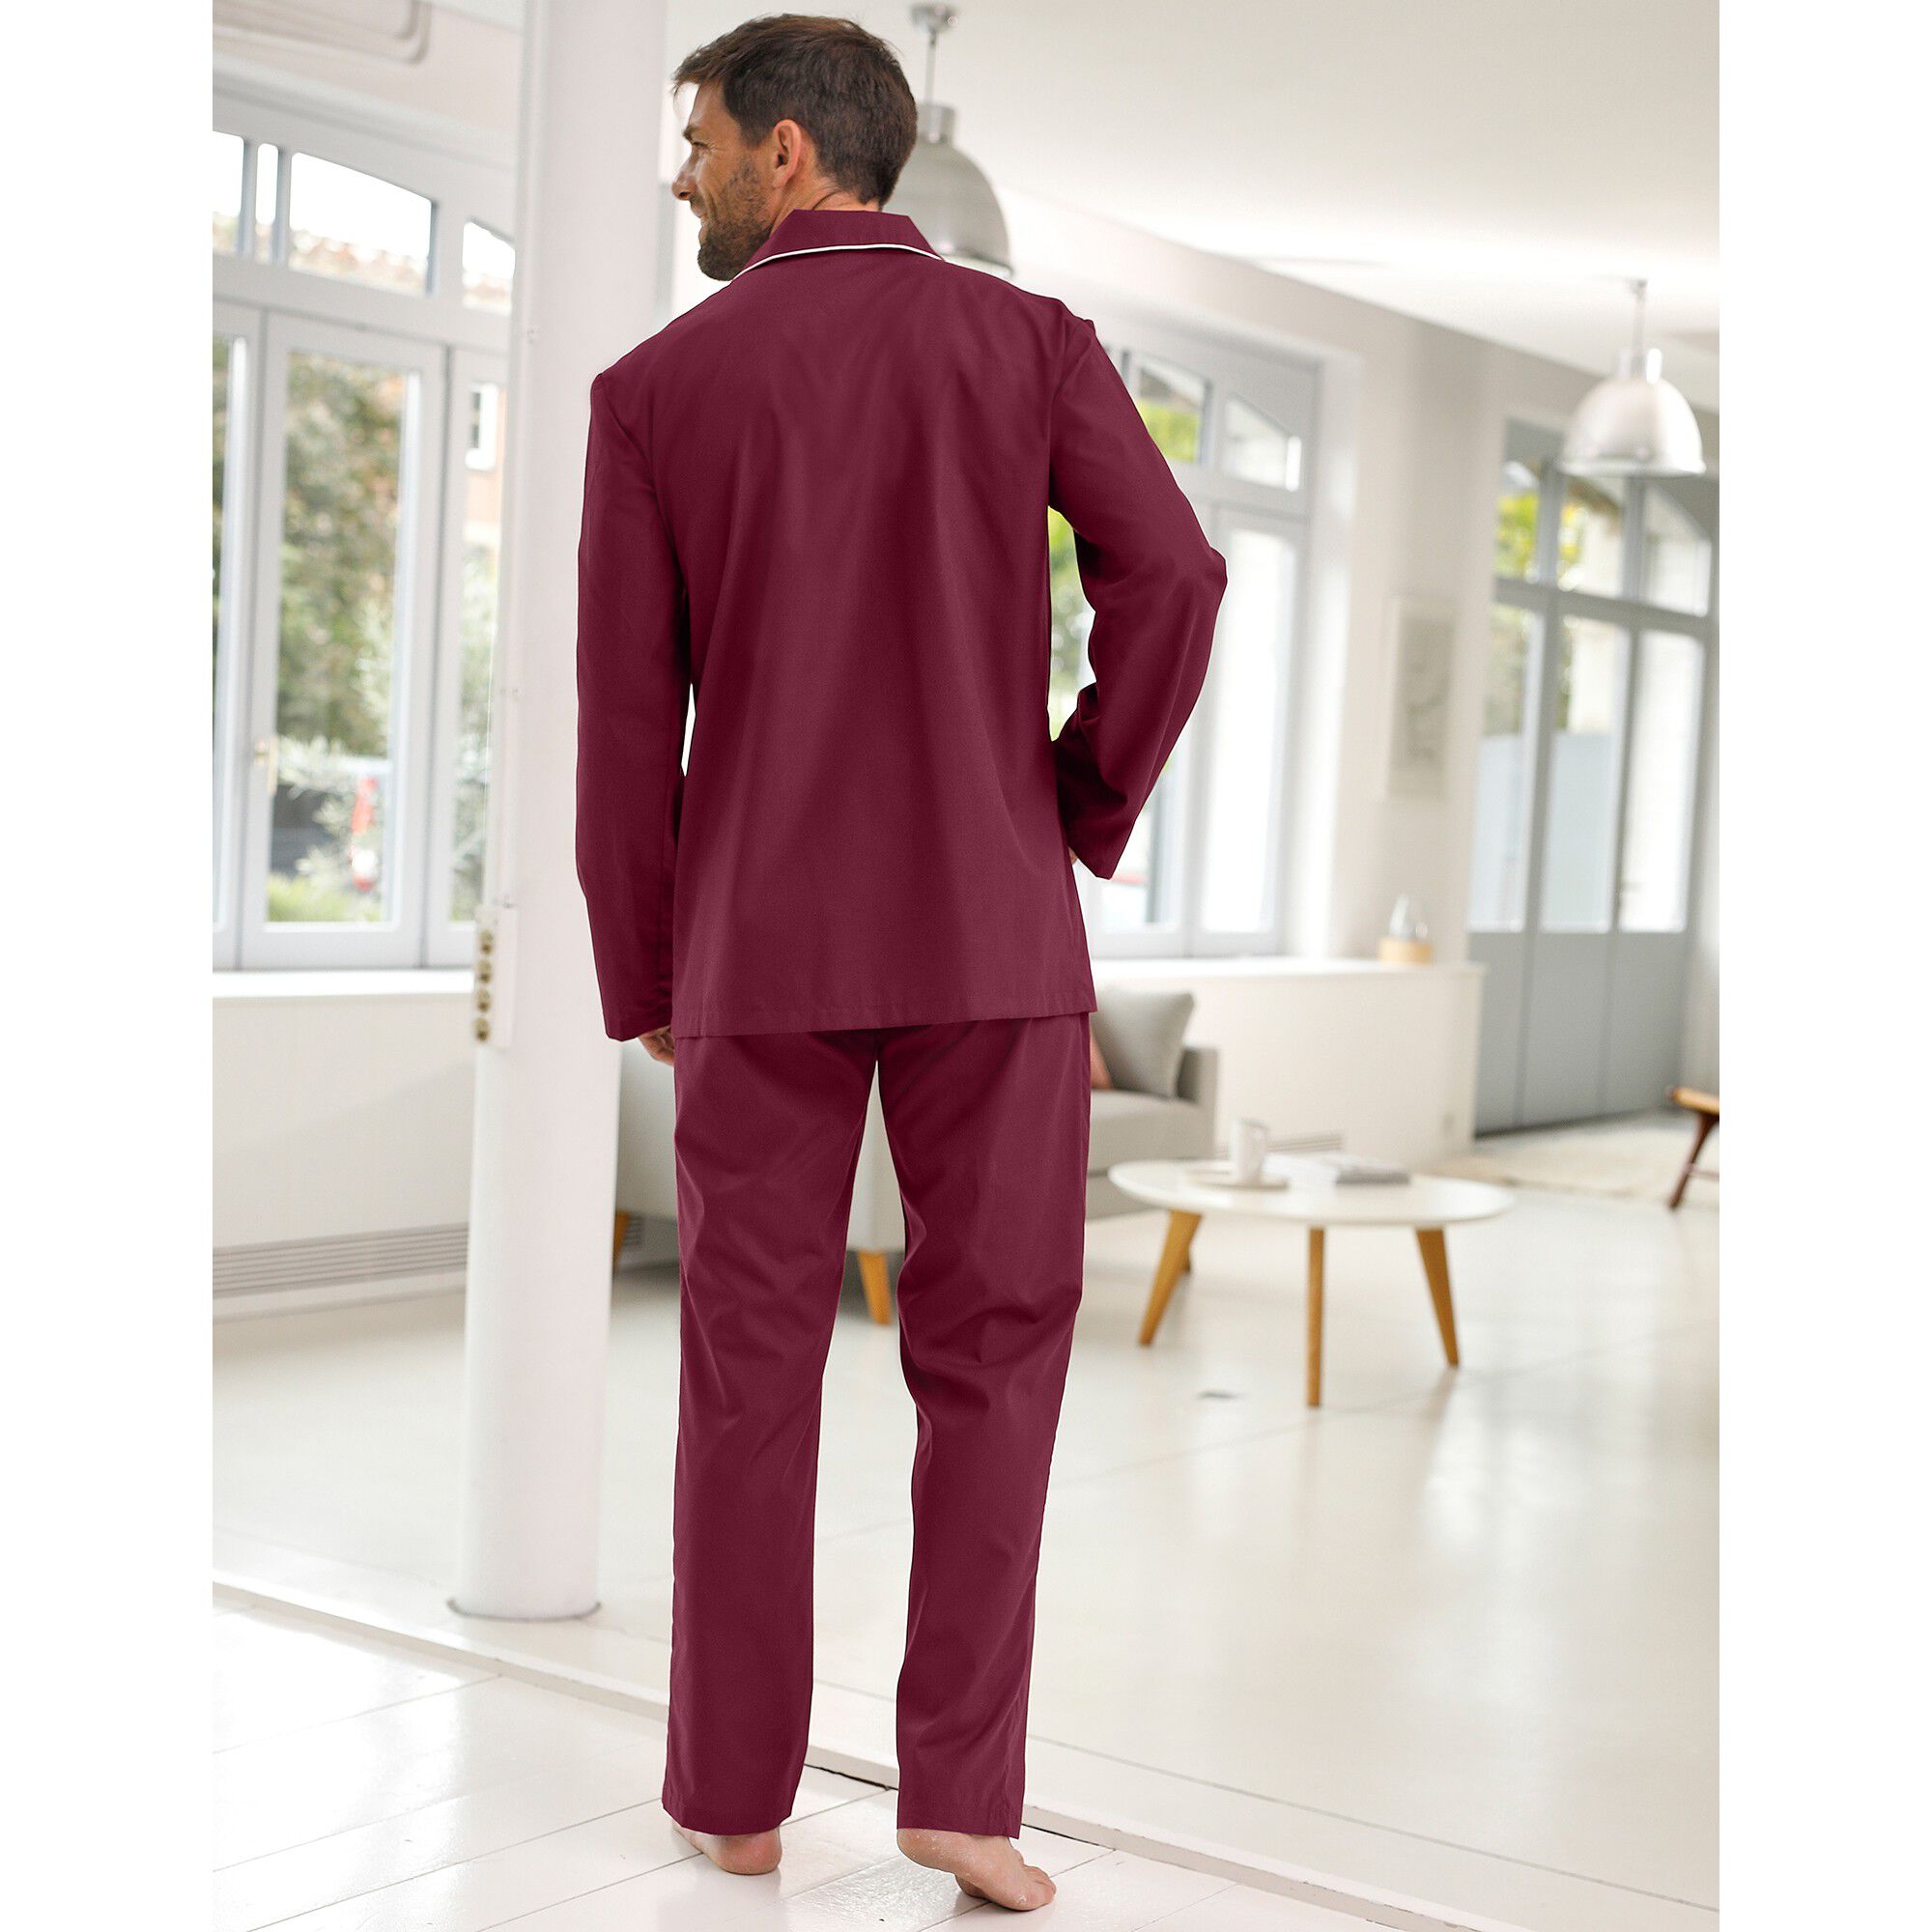 Blacheporte Homme Vêtements Sous-vêtements vêtements de nuit Peignoirs Pyjama Imprimé Popeline Polyester/coton 